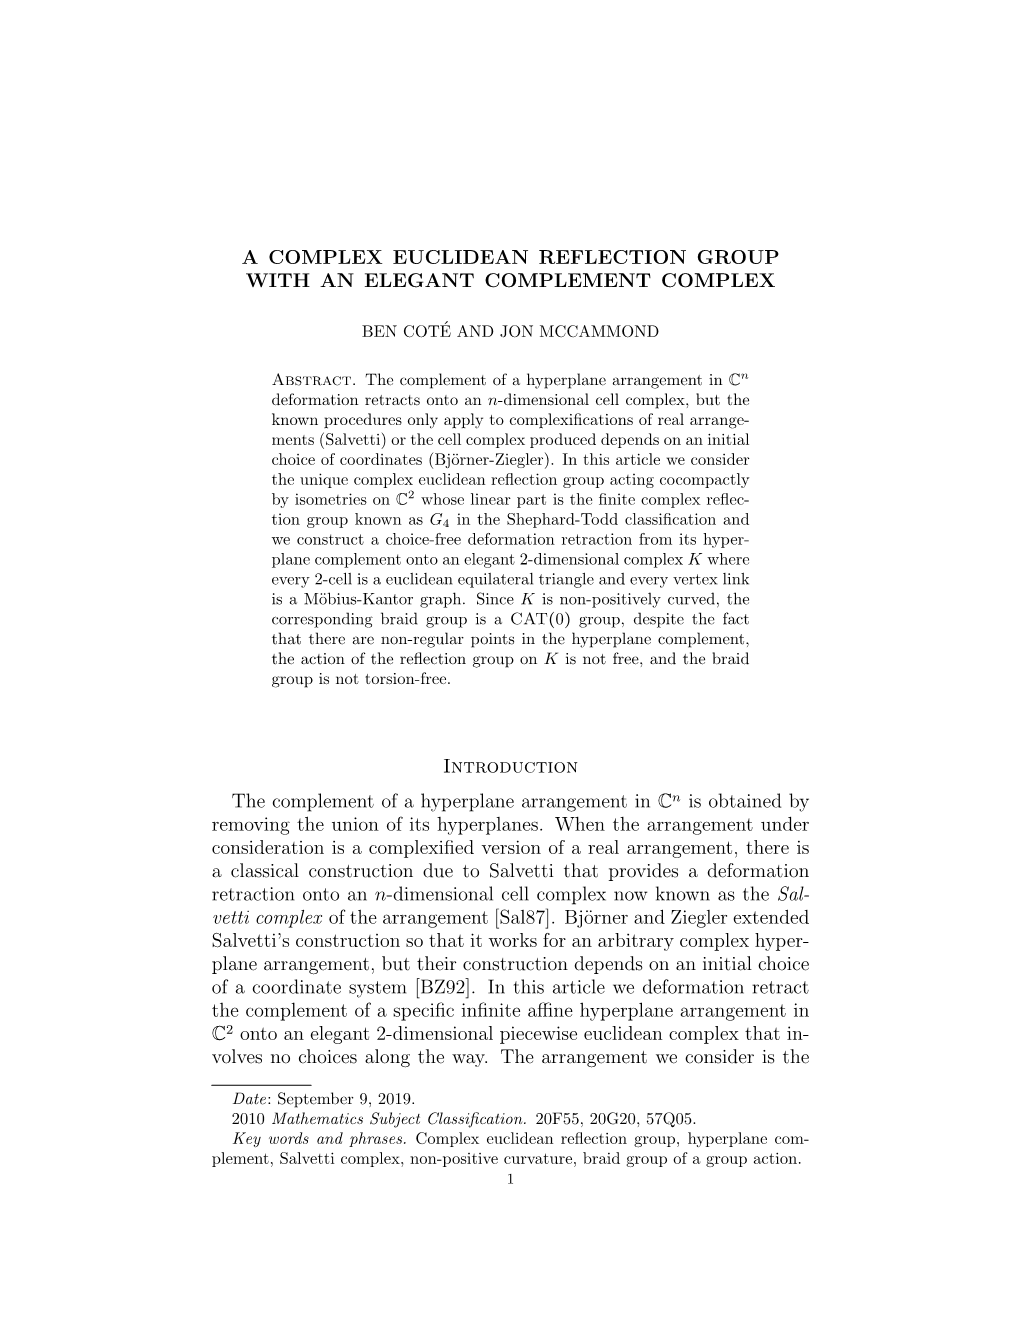 A COMPLEX EUCLIDEAN REFLECTION GROUP with an ELEGANT COMPLEMENT COMPLEX Introduction the Complement of a Hyperplane Arrangement